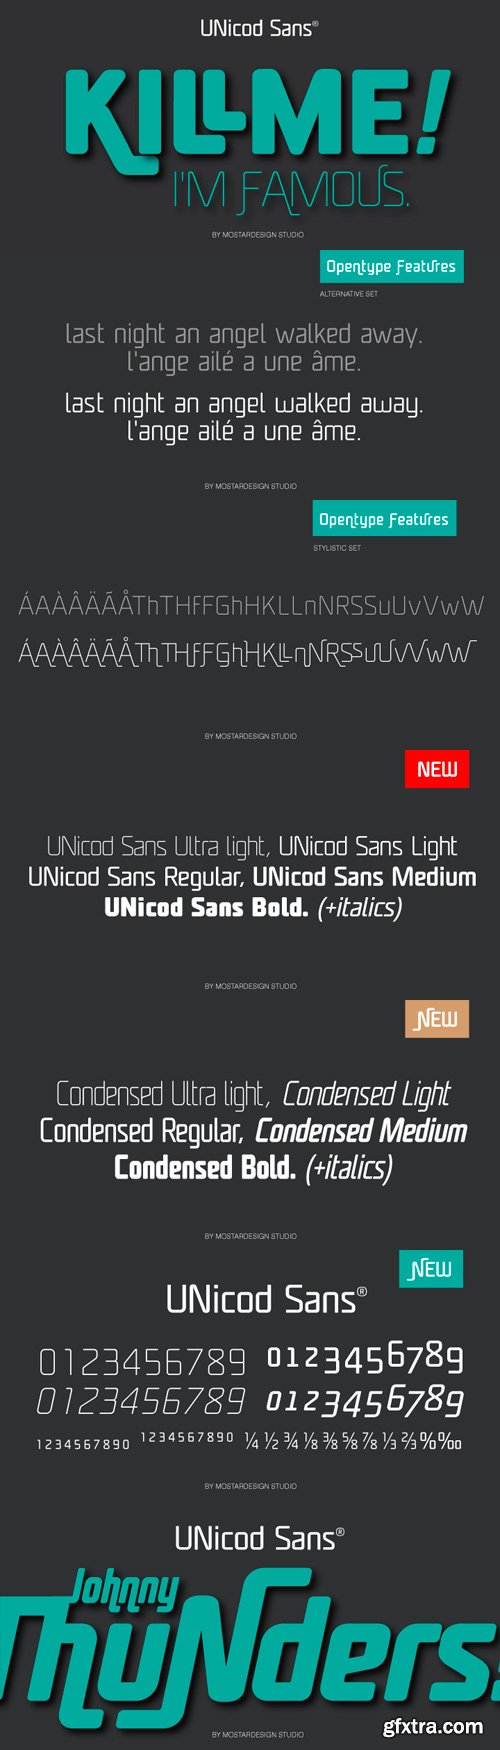 Unicod Sans Font Family - 18 Fonts for $299